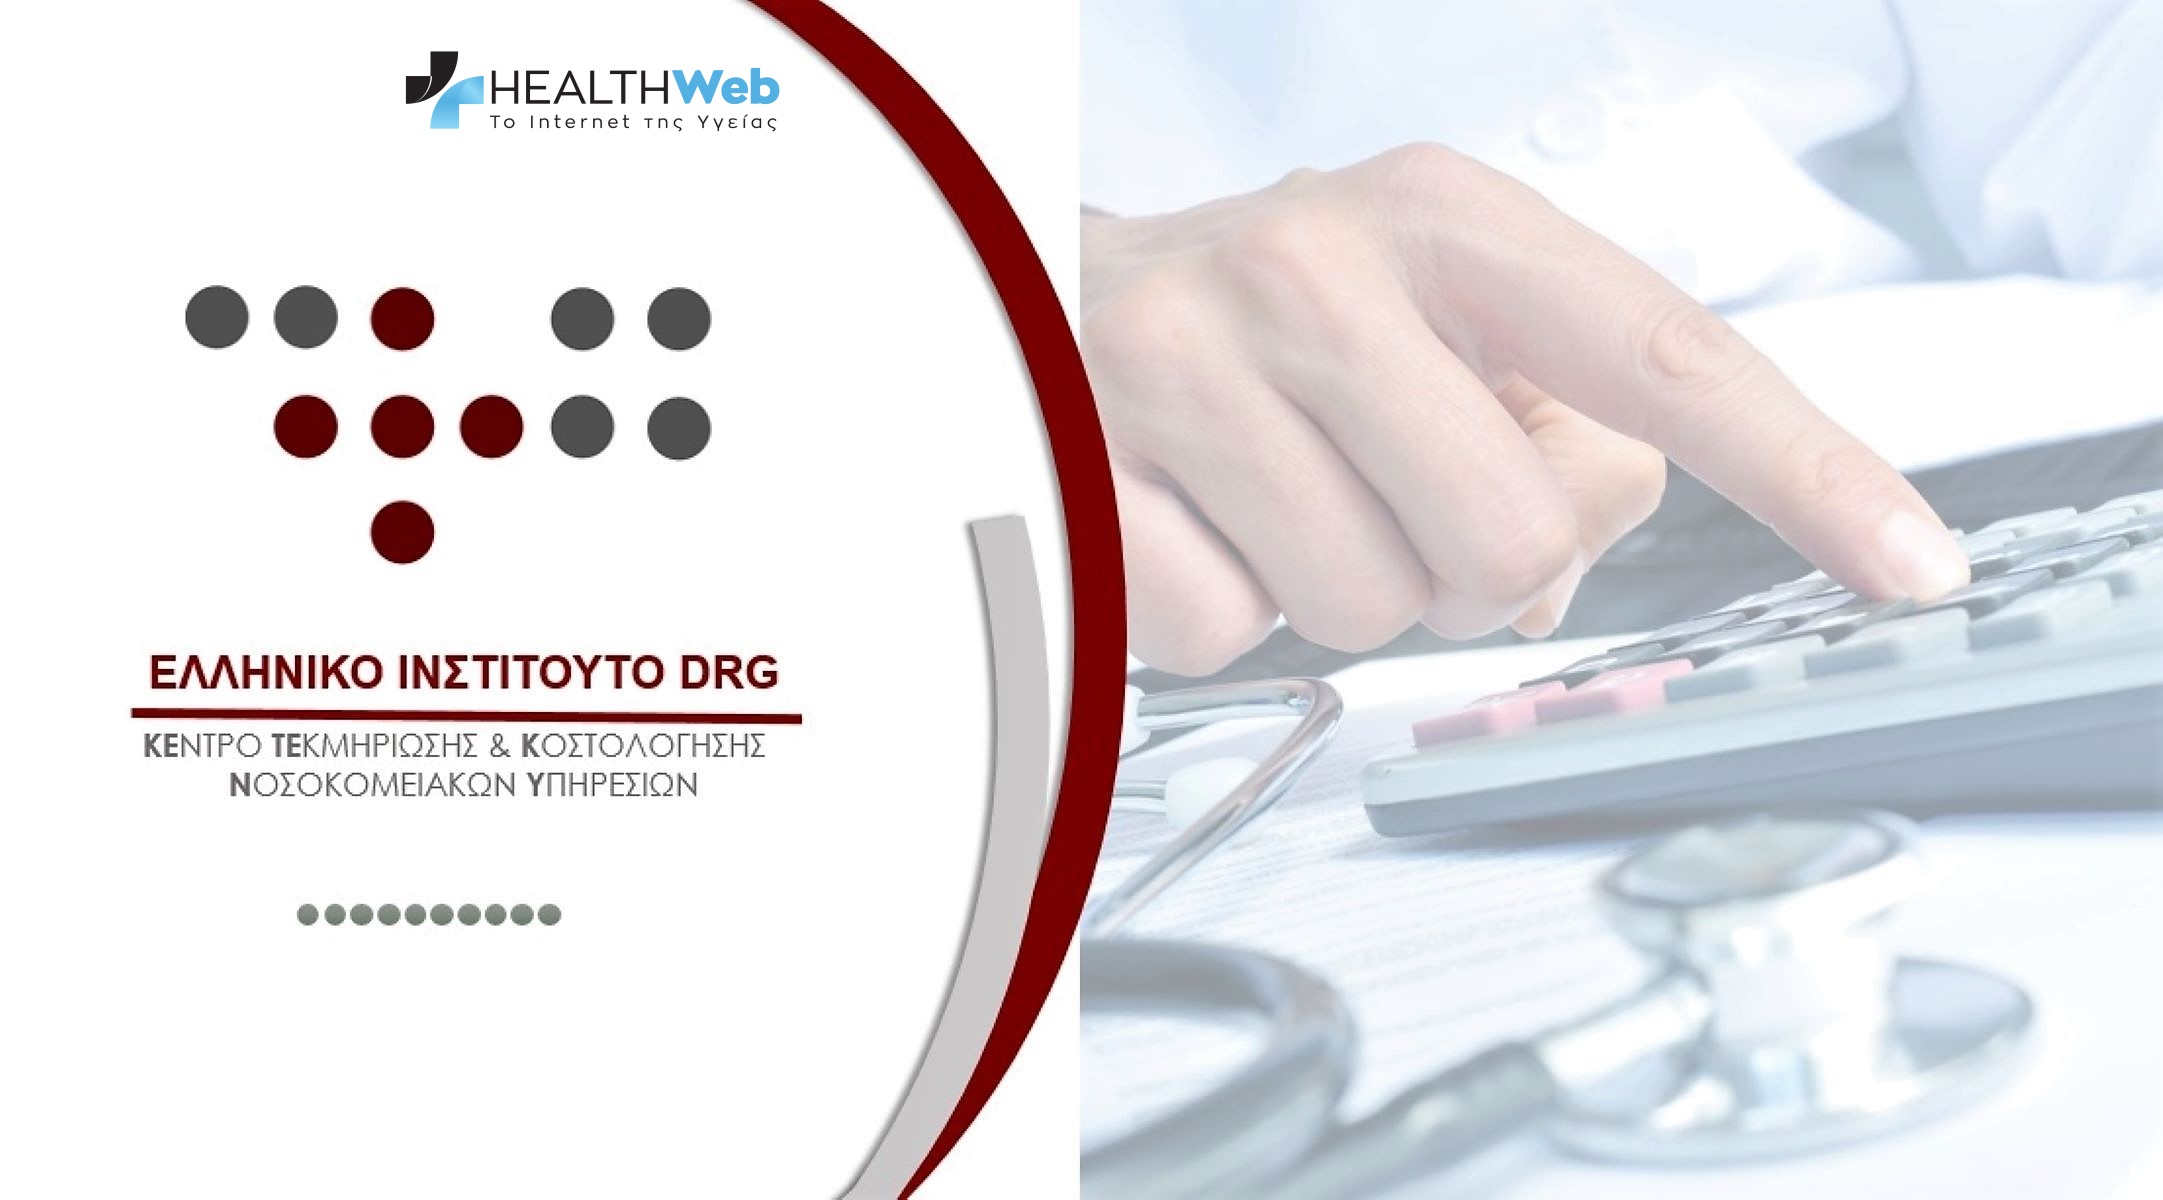 DRGs :Αναξιόπιστο το σύστημα DRGs .Επιβεβαιώθηκε το healthweb από το Ελεγκτικό Συνέδριο 